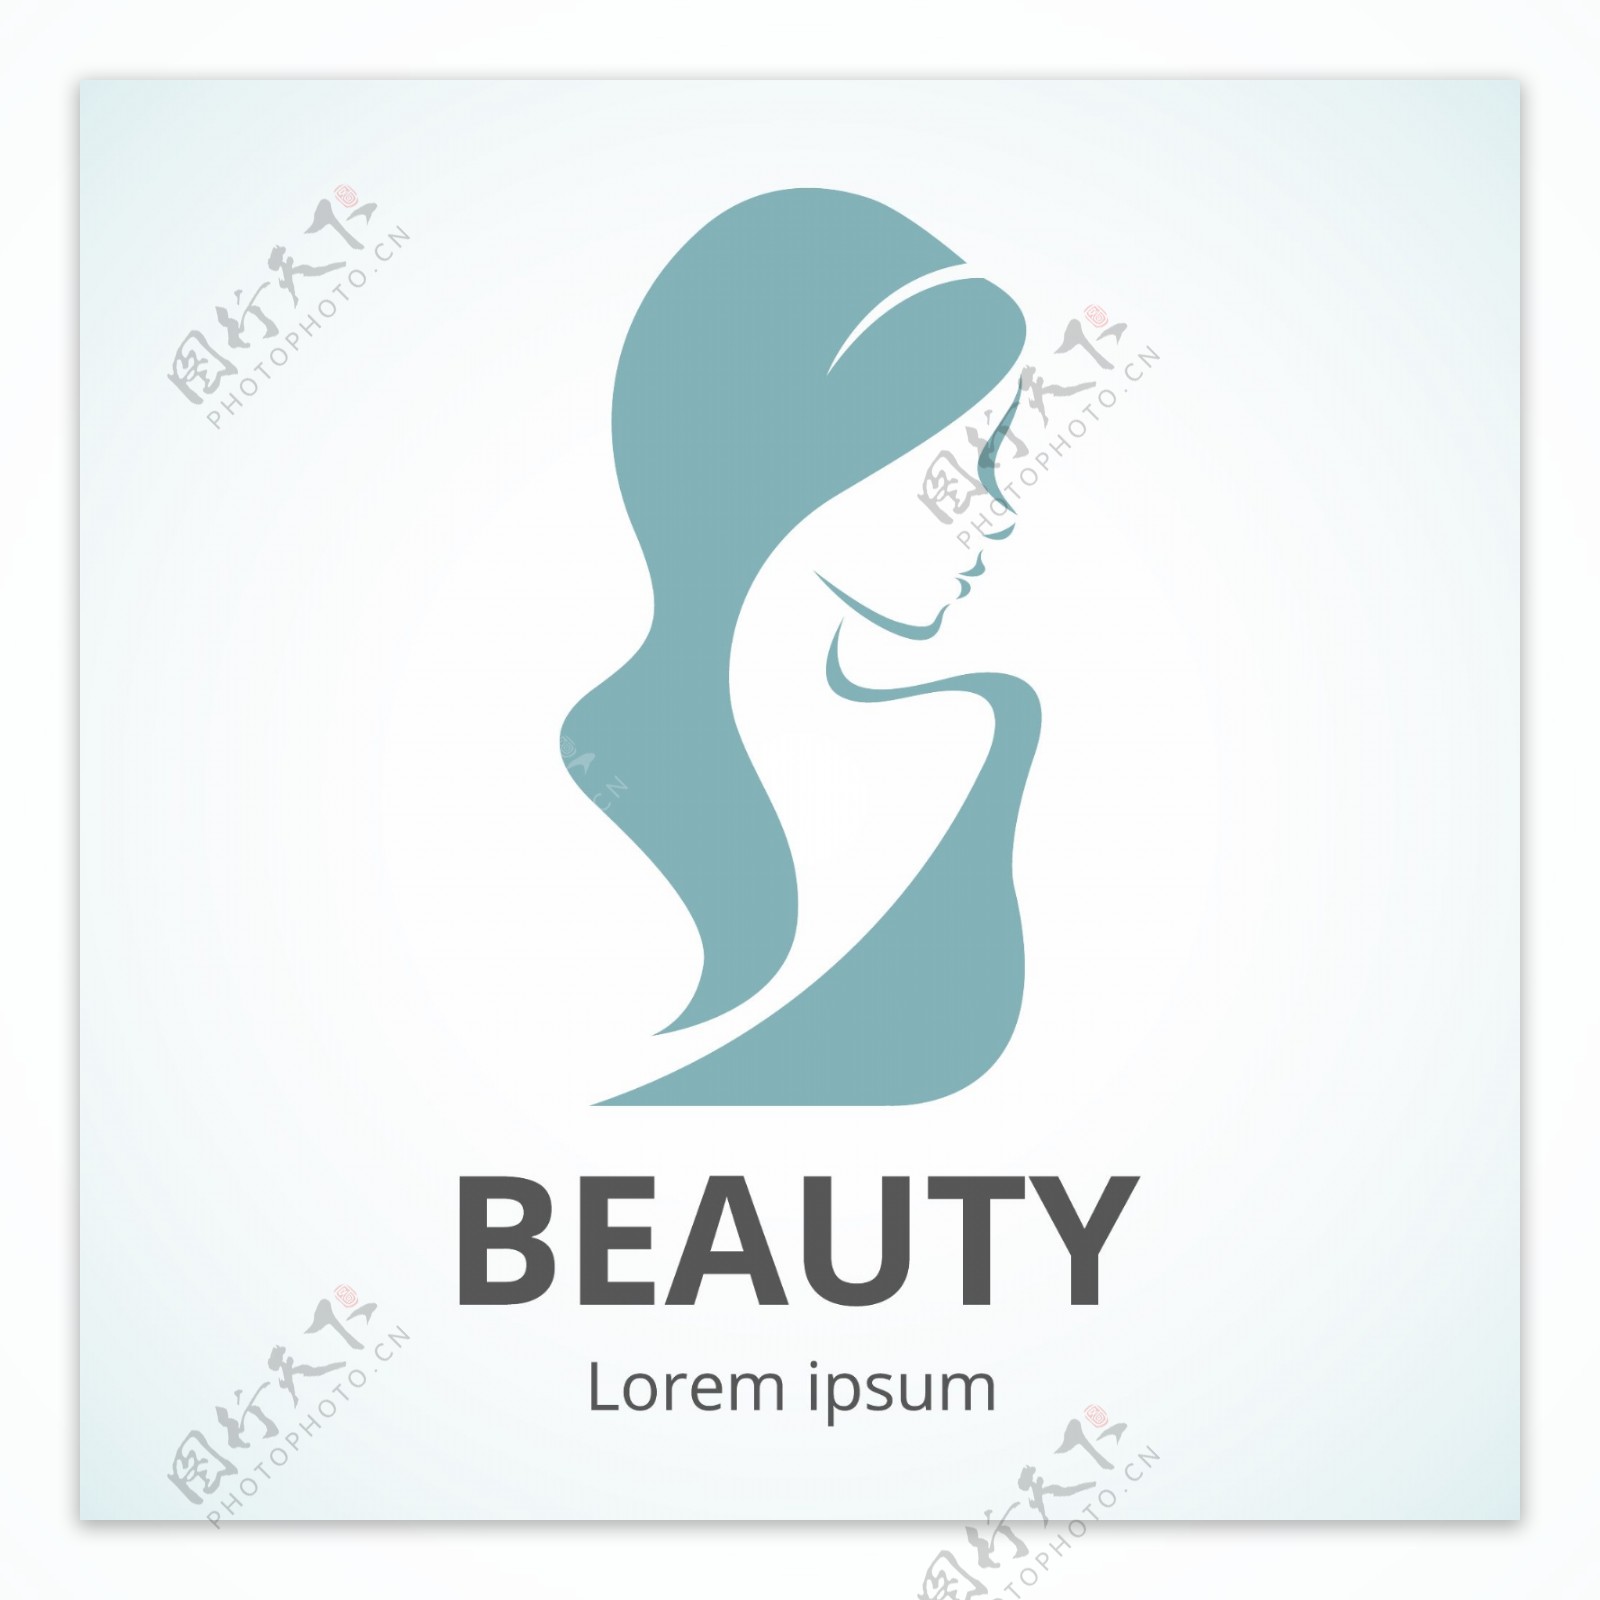 女性健康美容美体logo标志